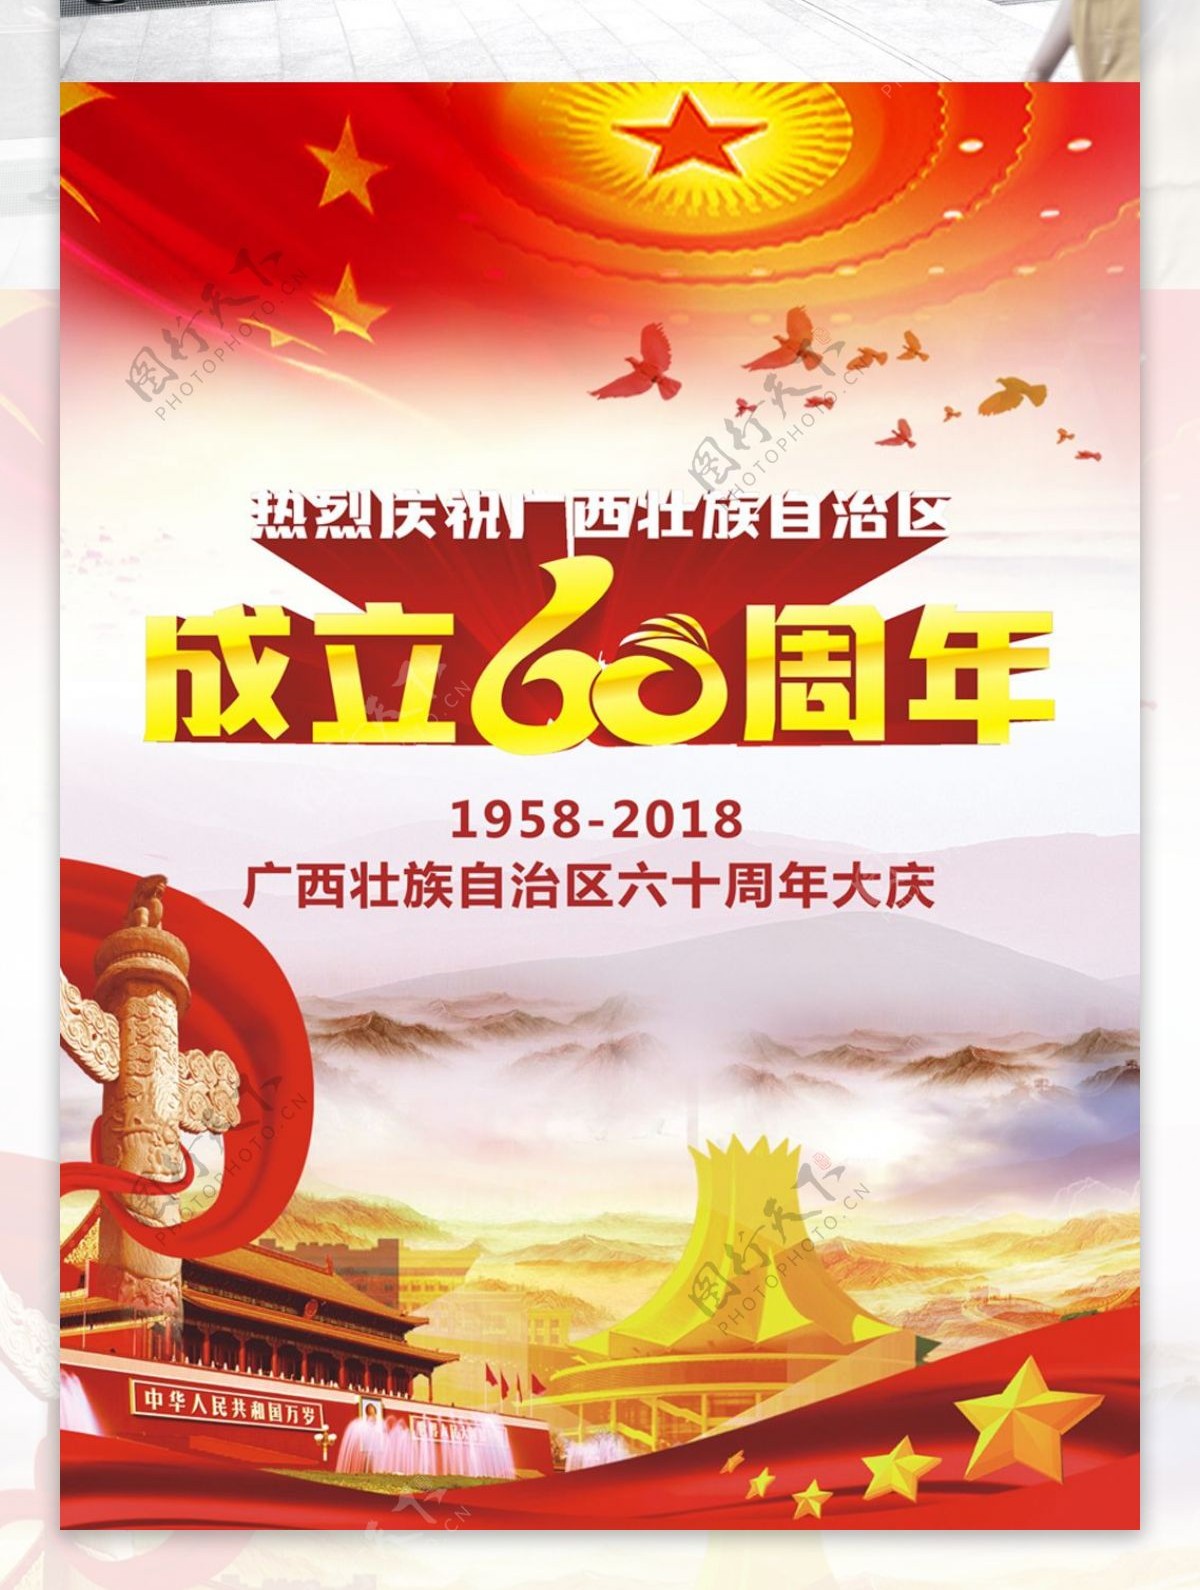 广西自治区成立60周年海报